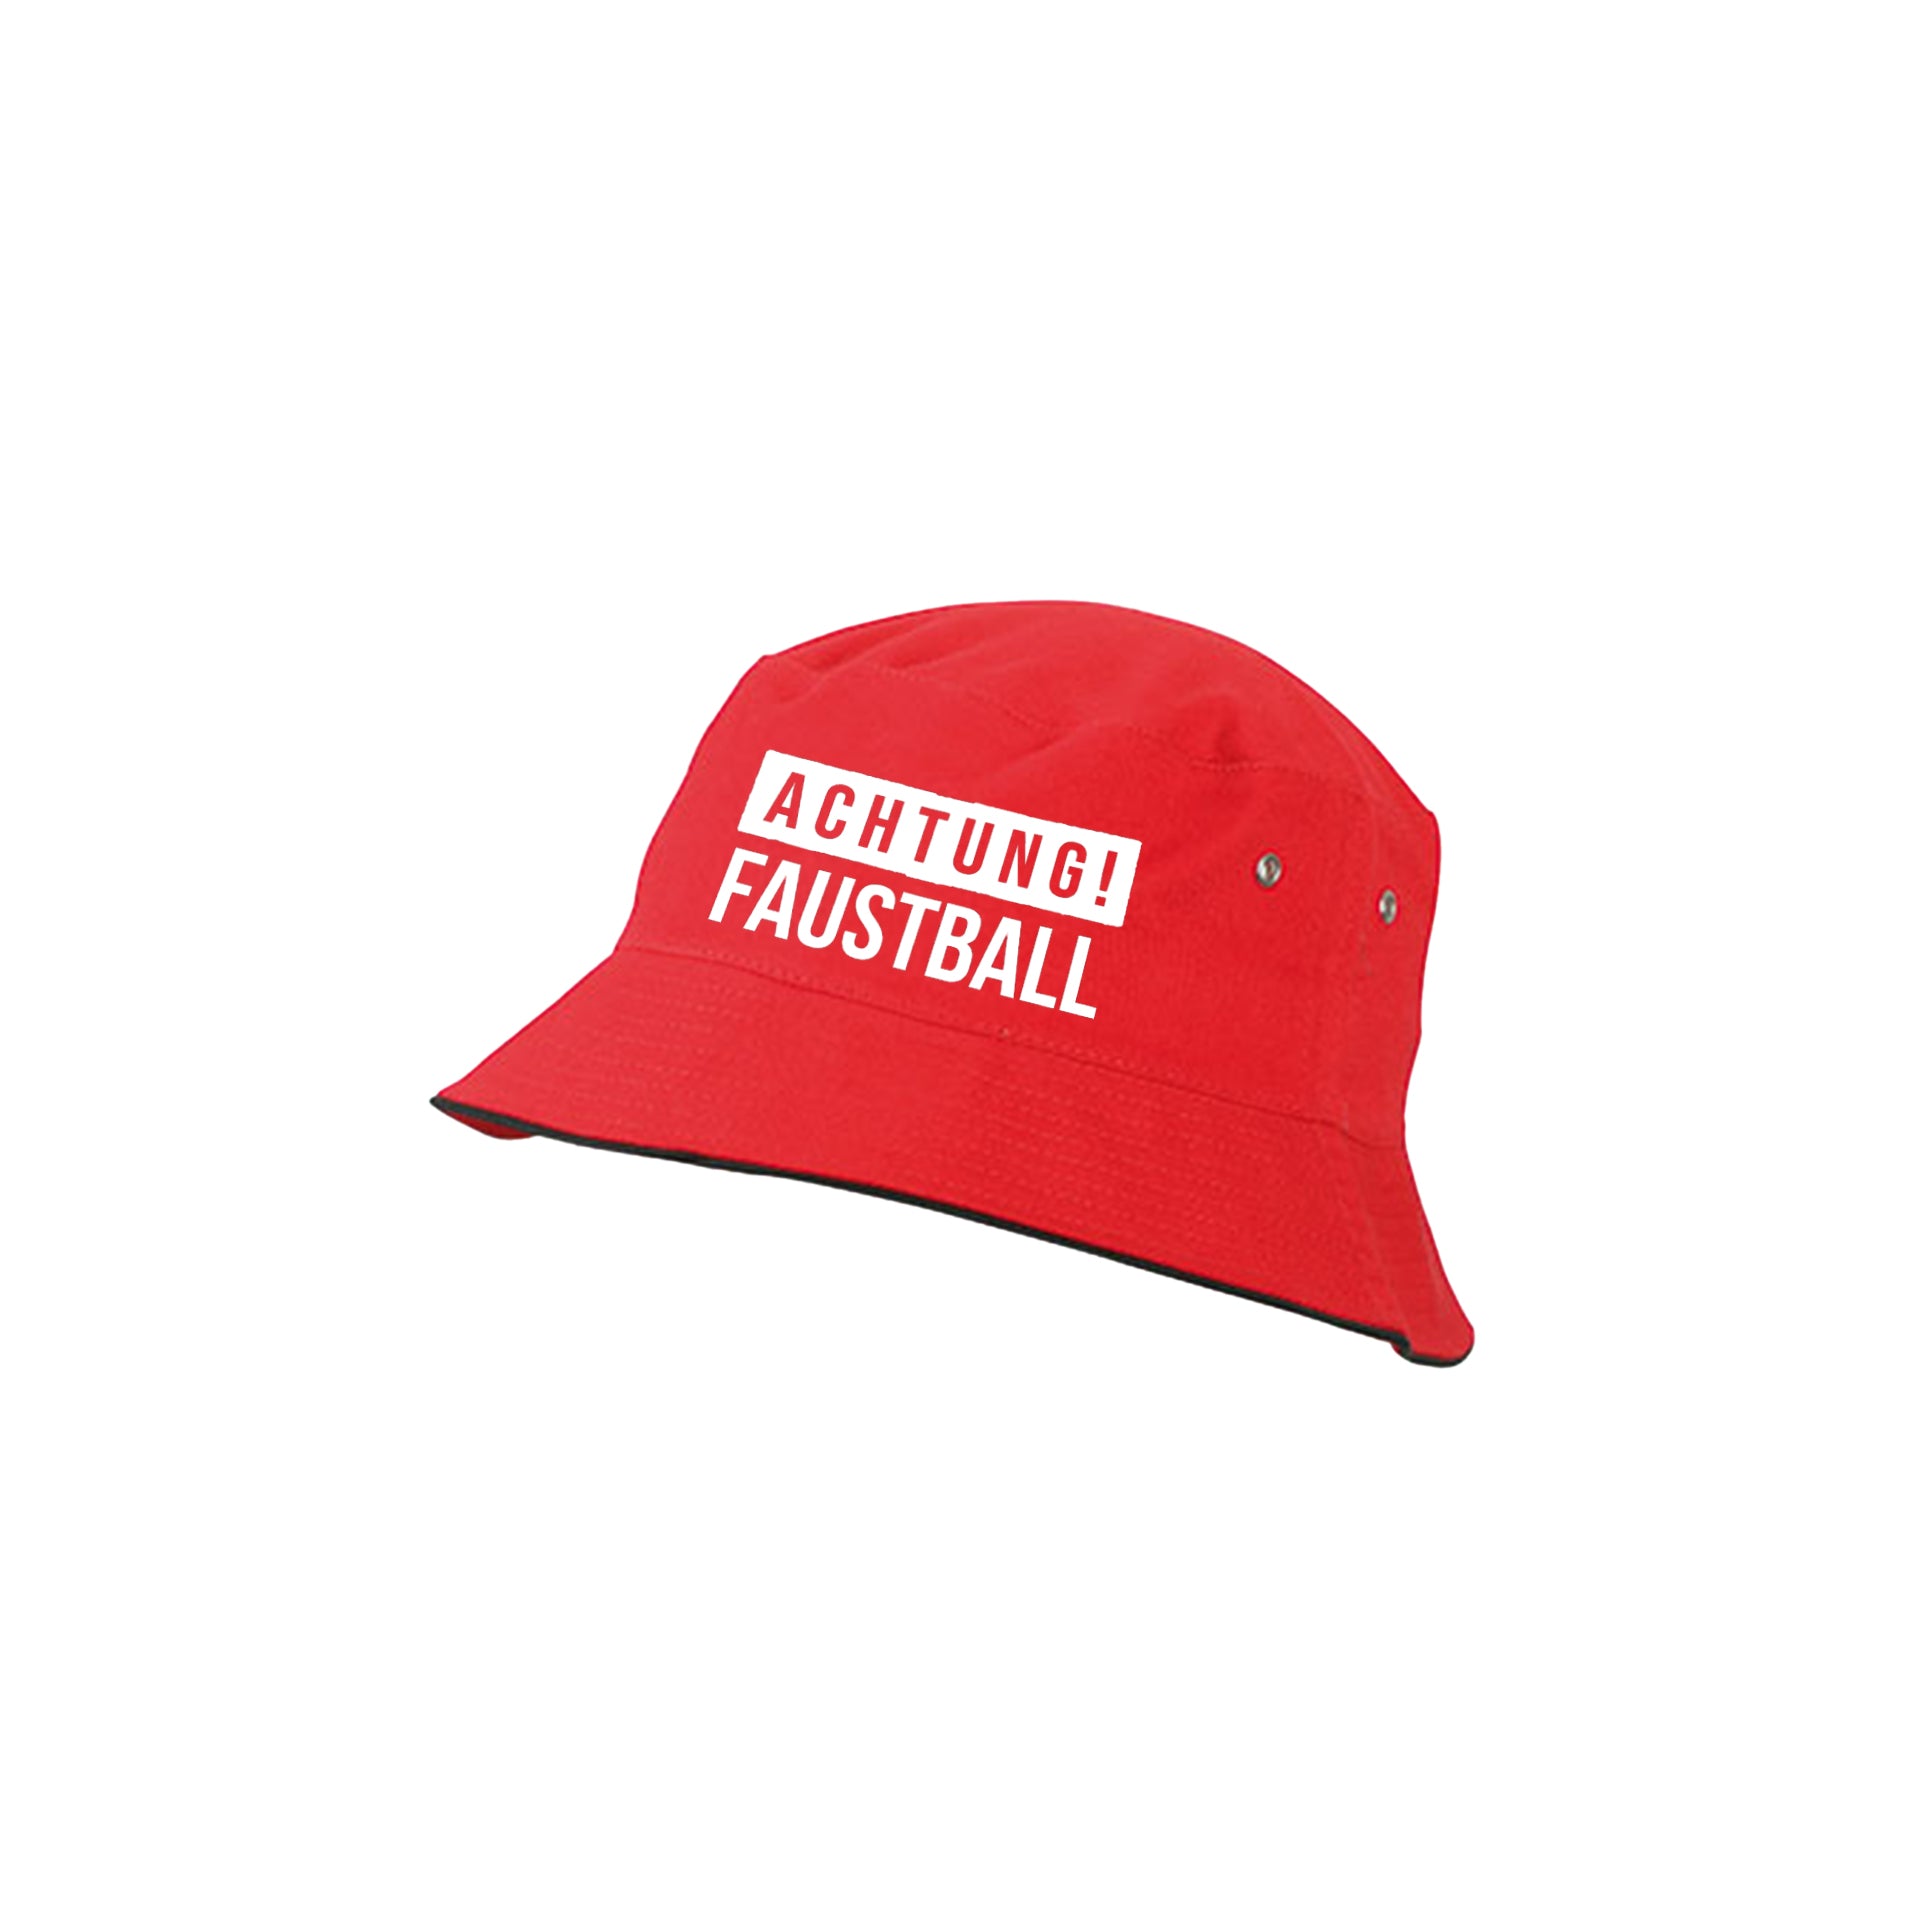 Faustball Fischerhut (WM Edition)